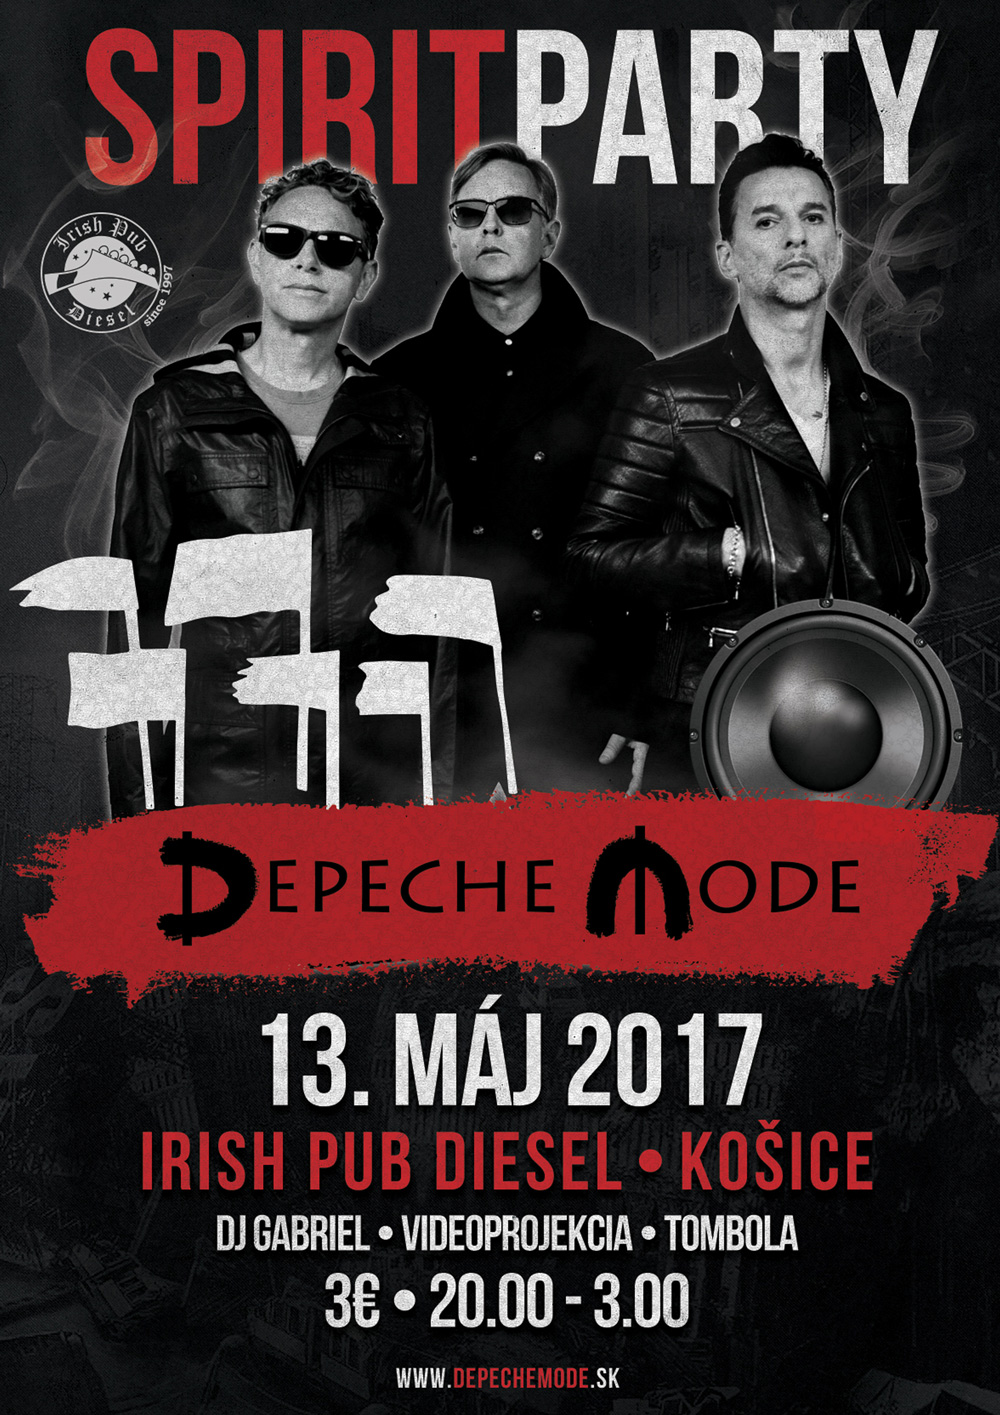 Plagát: Depeche Mode Spirit Party